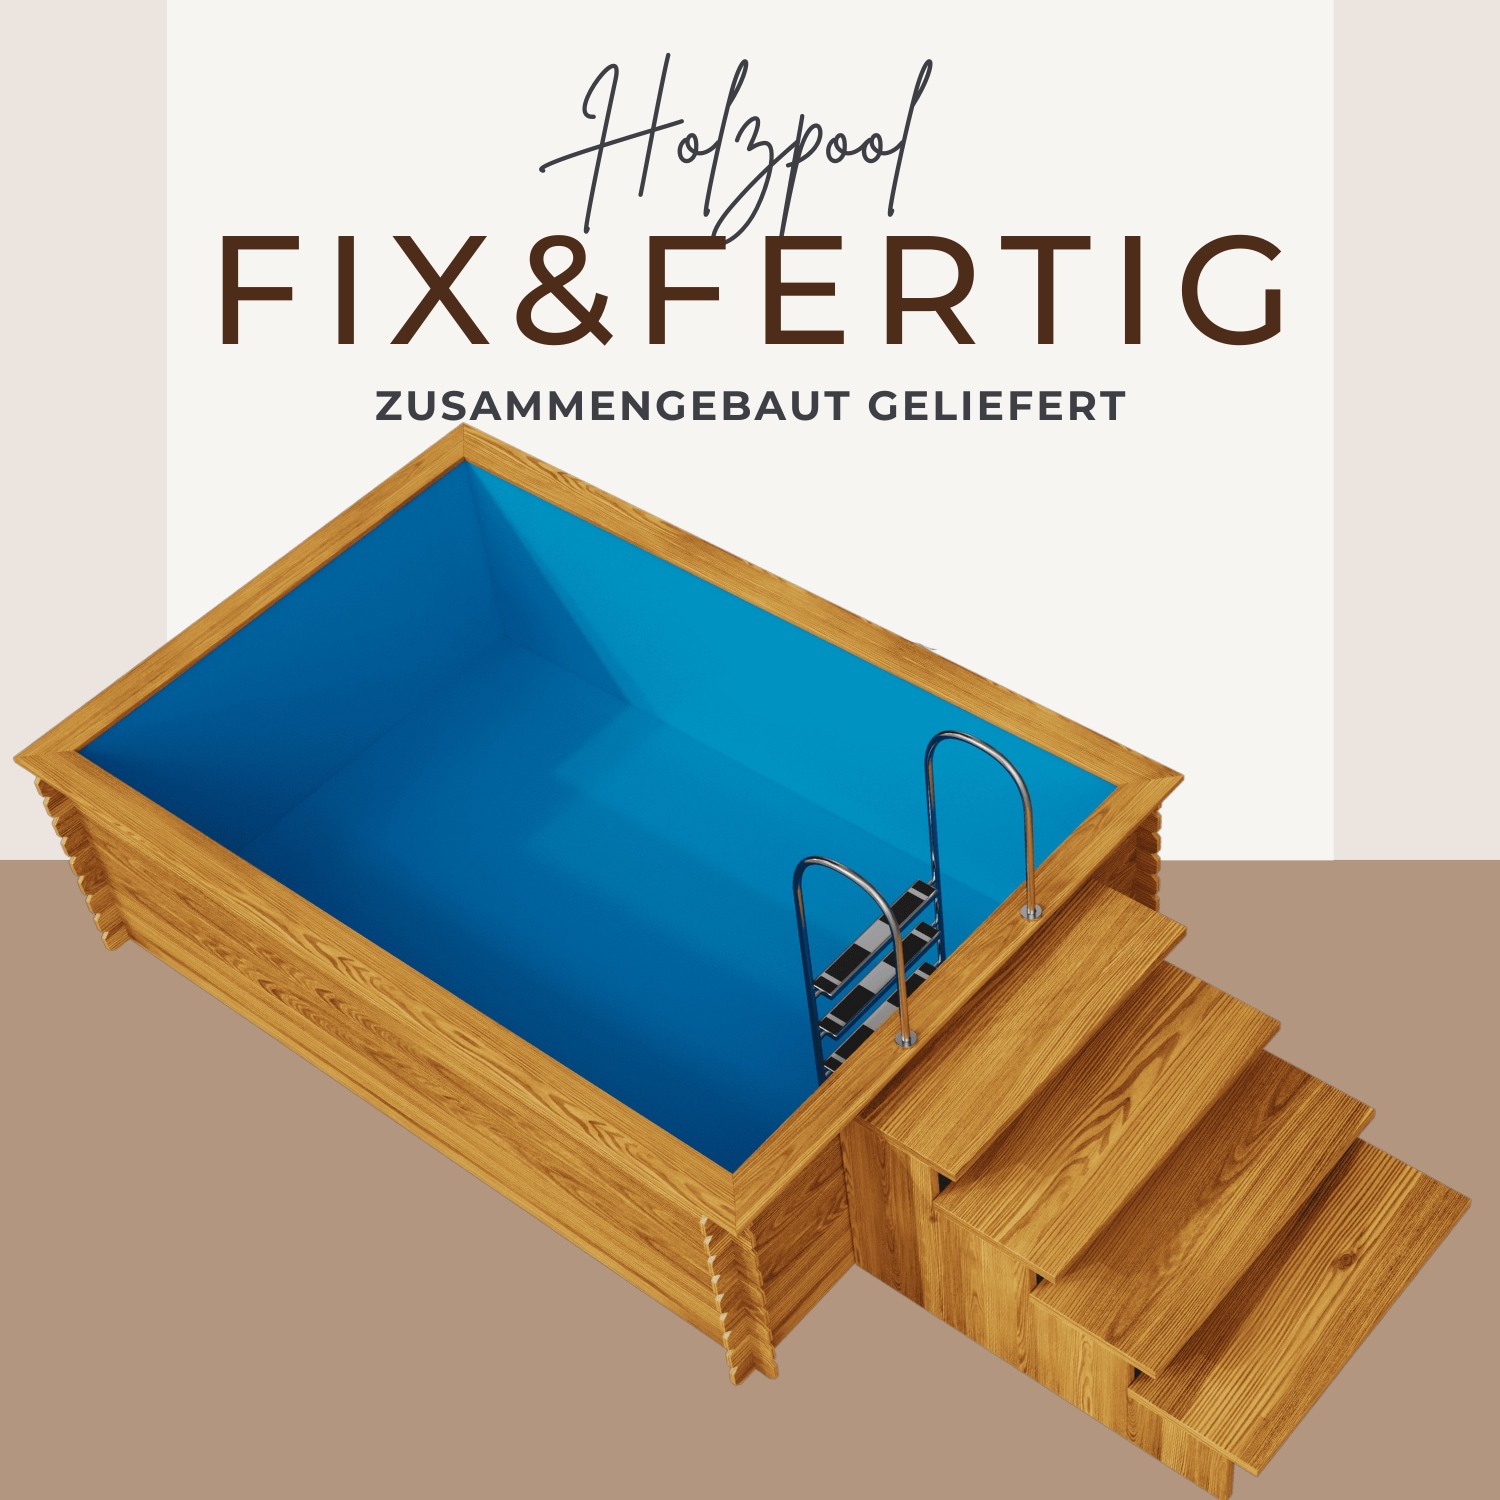 EDEN Holzmanufaktur Rechteckpool »Fix&Fertig«, (Set, 4 tlg.), inkl. blauem Einsatz, Dämmung, Einstiegstreppe & -Leiter, Wasserablauf